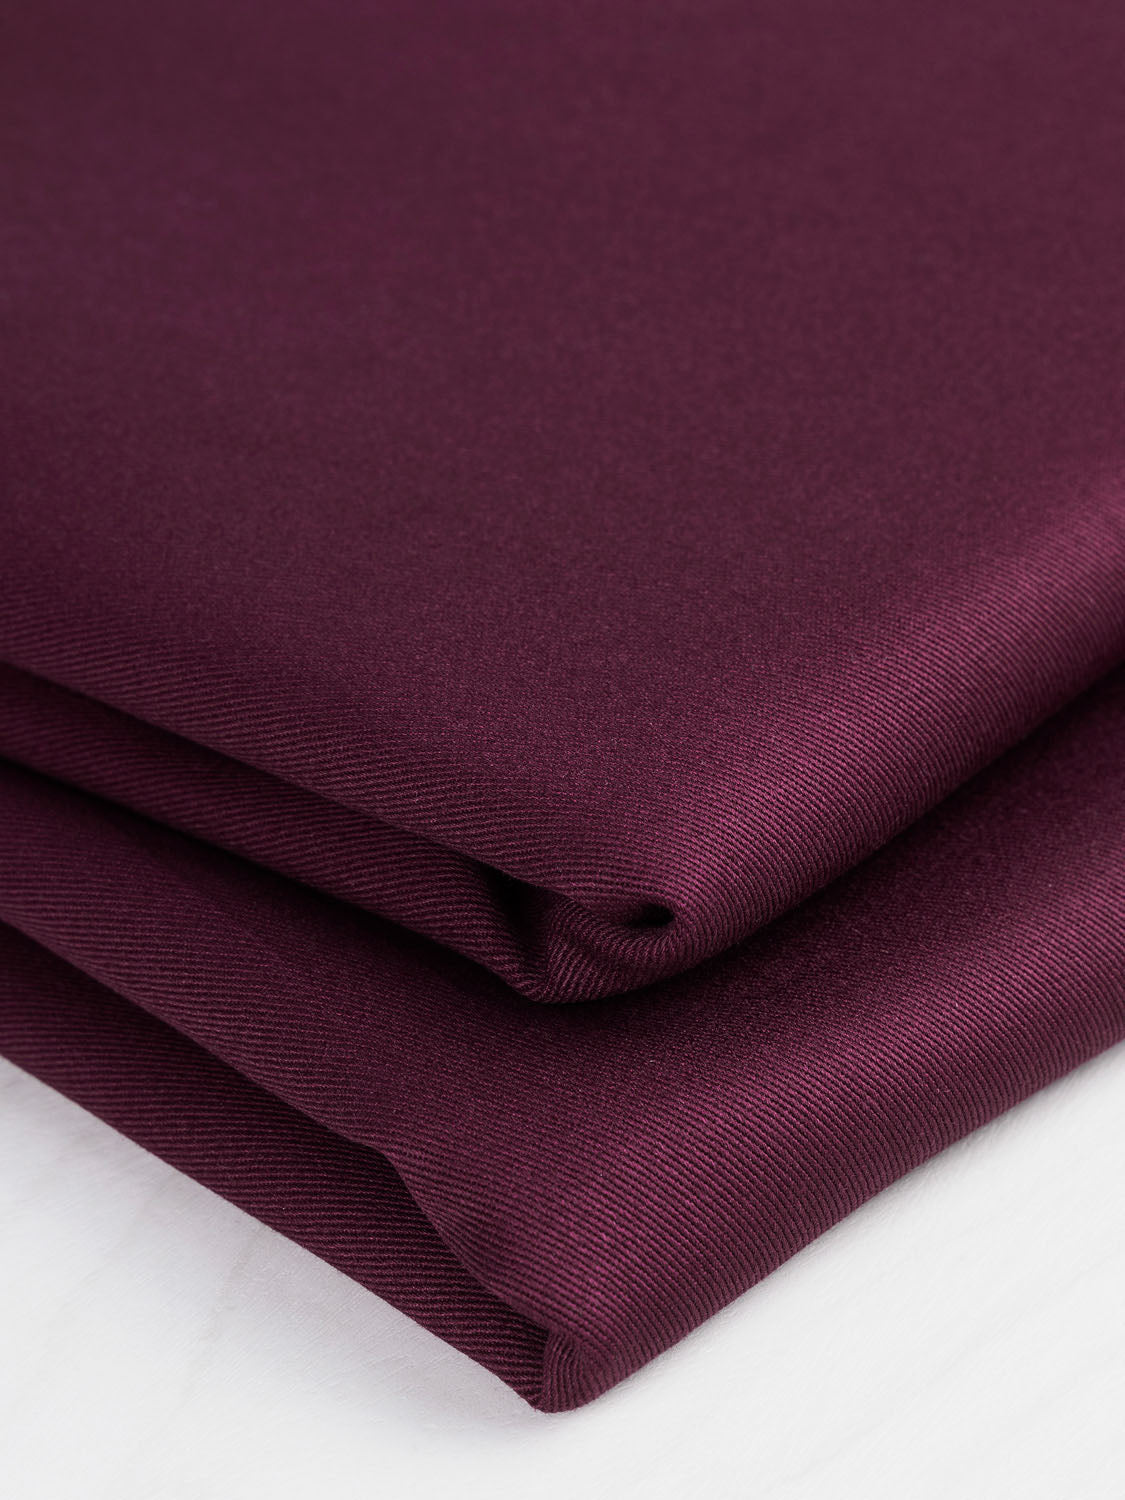 Midweight  Organic Cotton Twill - Mulberry | Core Fabrics